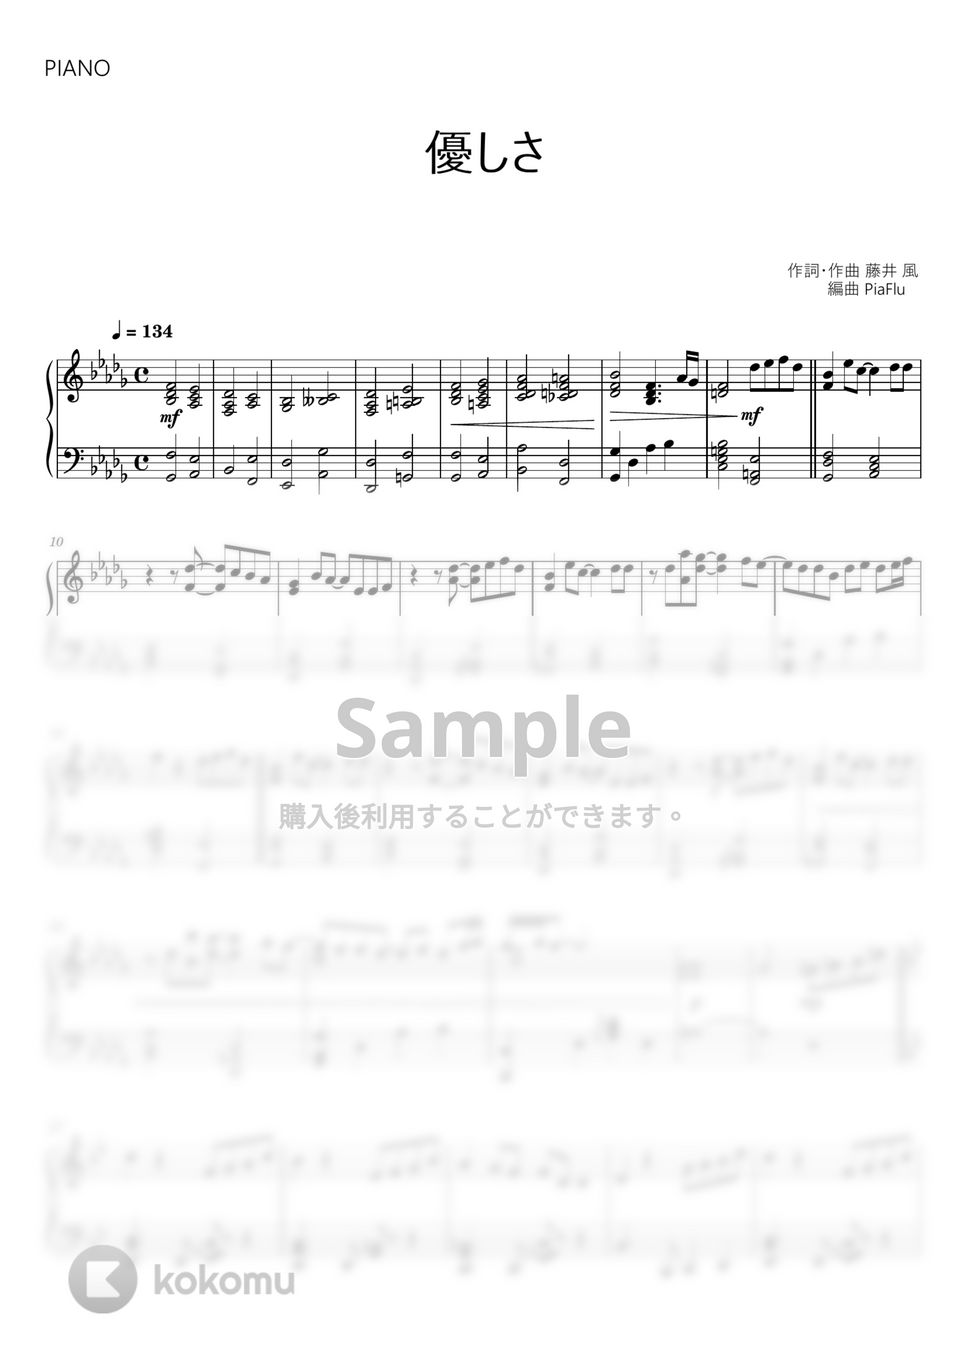 藤井 風 - 優しさ (ピアノ) by PiaFlu